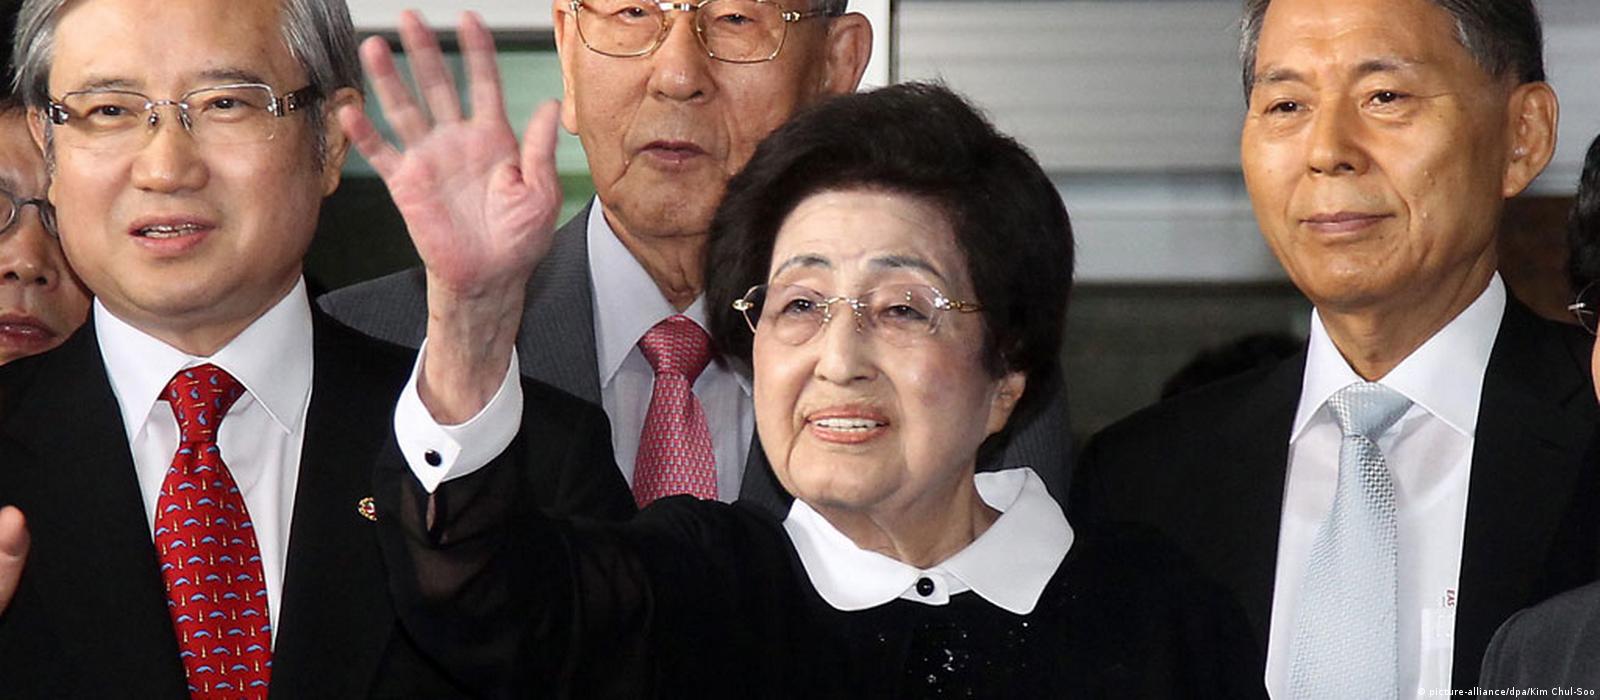 Phu nhân cựu Tổng thống Hàn Quốc là một trong những người phụ nữ quyền lực và thông minh nhất thế giới. Hãy chiêm ngưỡng hình ảnh của bà và khám phá những câu chuyện thú vị về cuộc đời và sự nghiệp của người phụ nữ tài ba này.